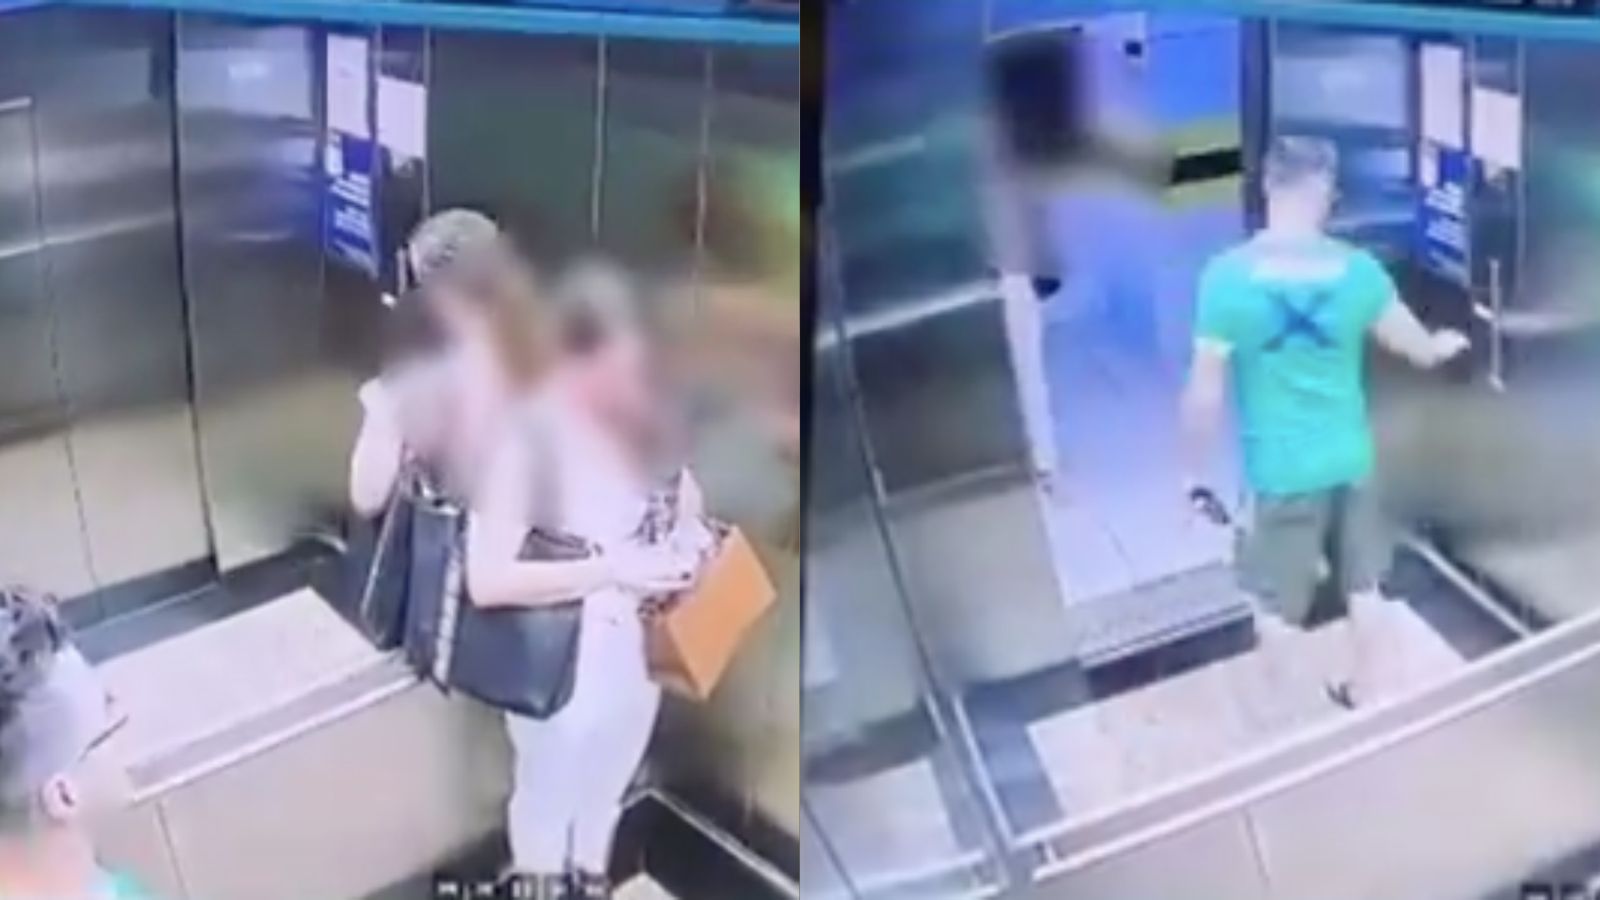 Homem que assediou nutricionista dentro de elevador em Fortaleza é denunciado por mais duas mulheres: “Senti a mão debaixo da minha saia”